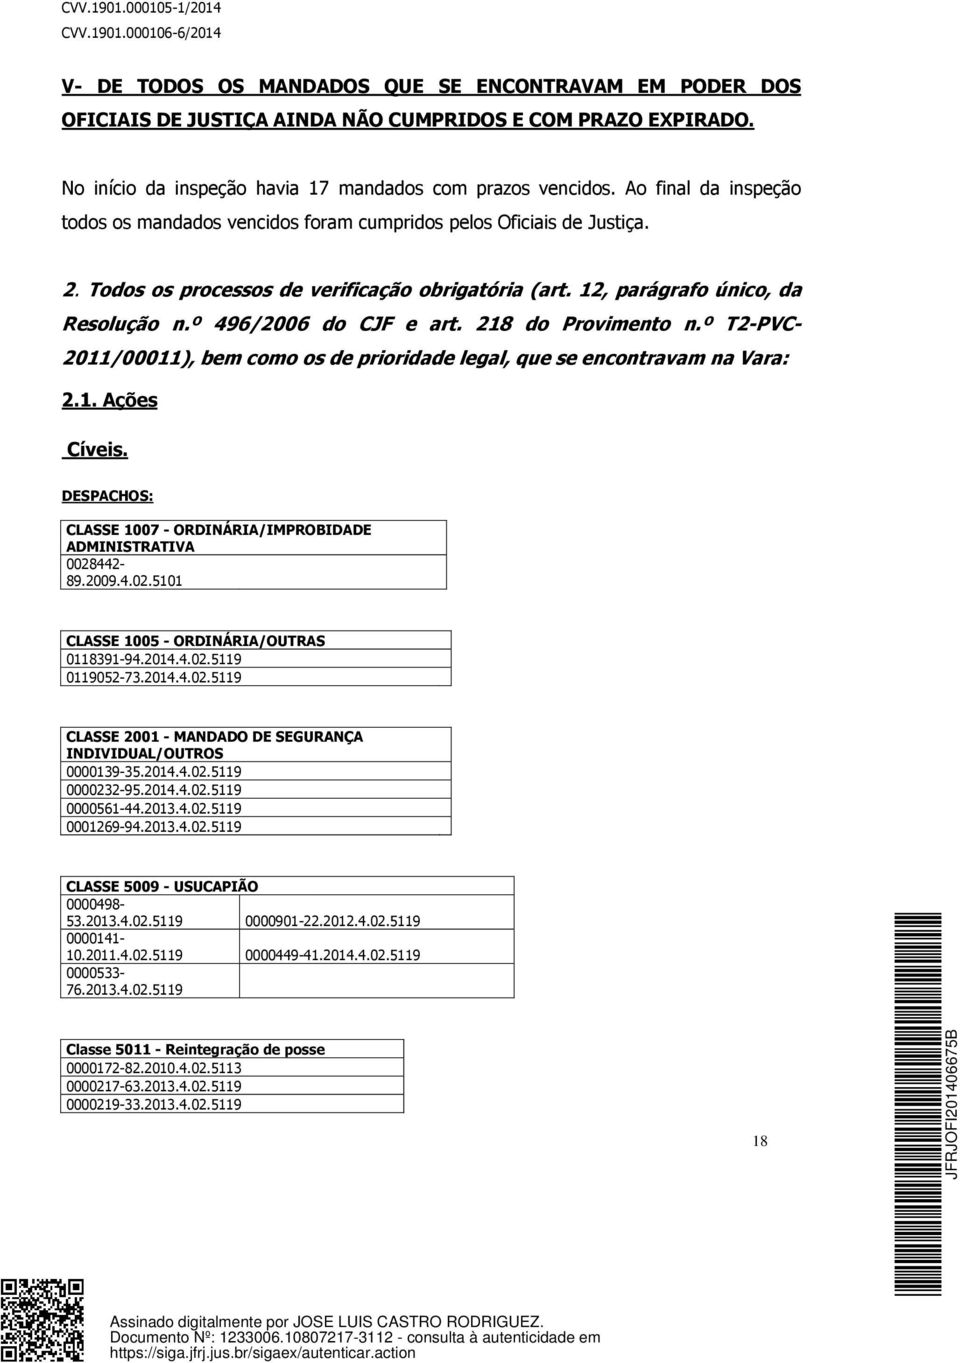 Todos os processos de verificação obrigatória (art. 12, parágrafo único, da Resolução n.º 496/2006 do CJF e art. 218 do Provimento n.